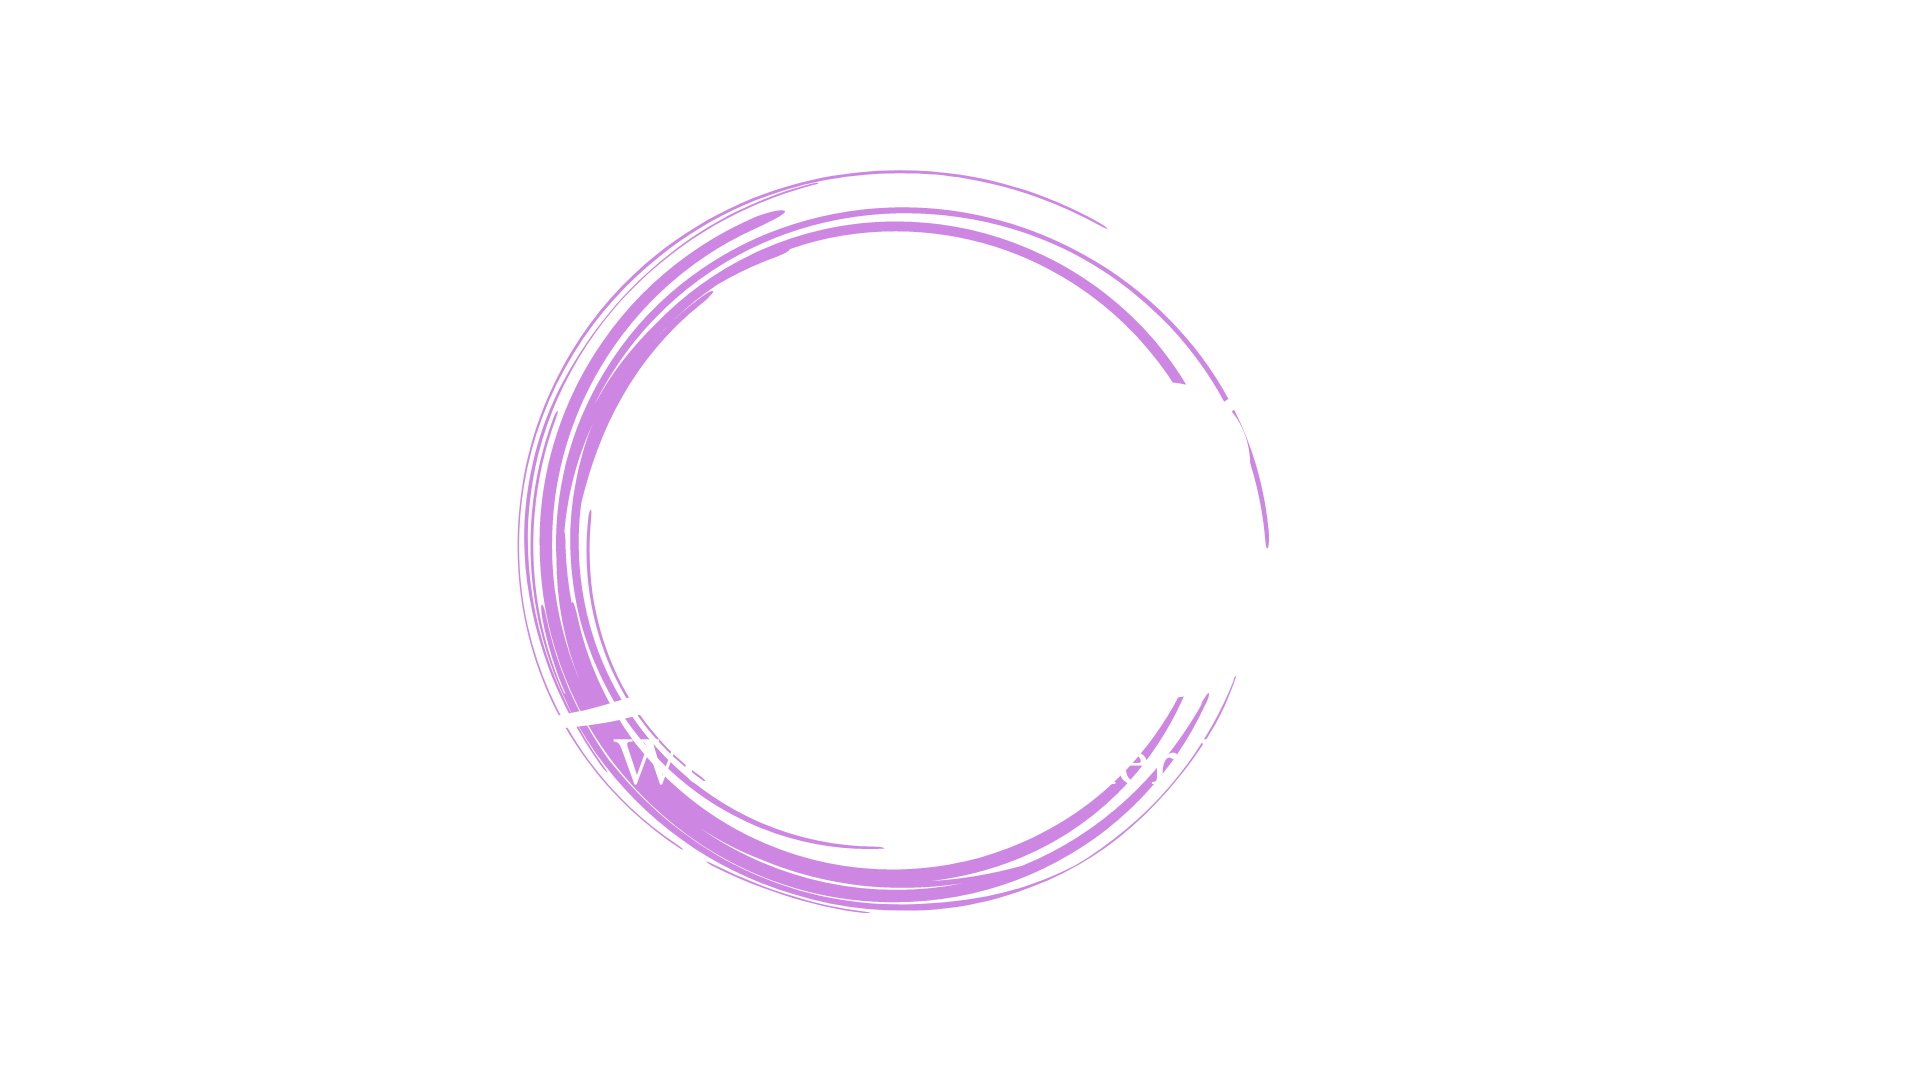 WBBworldwide